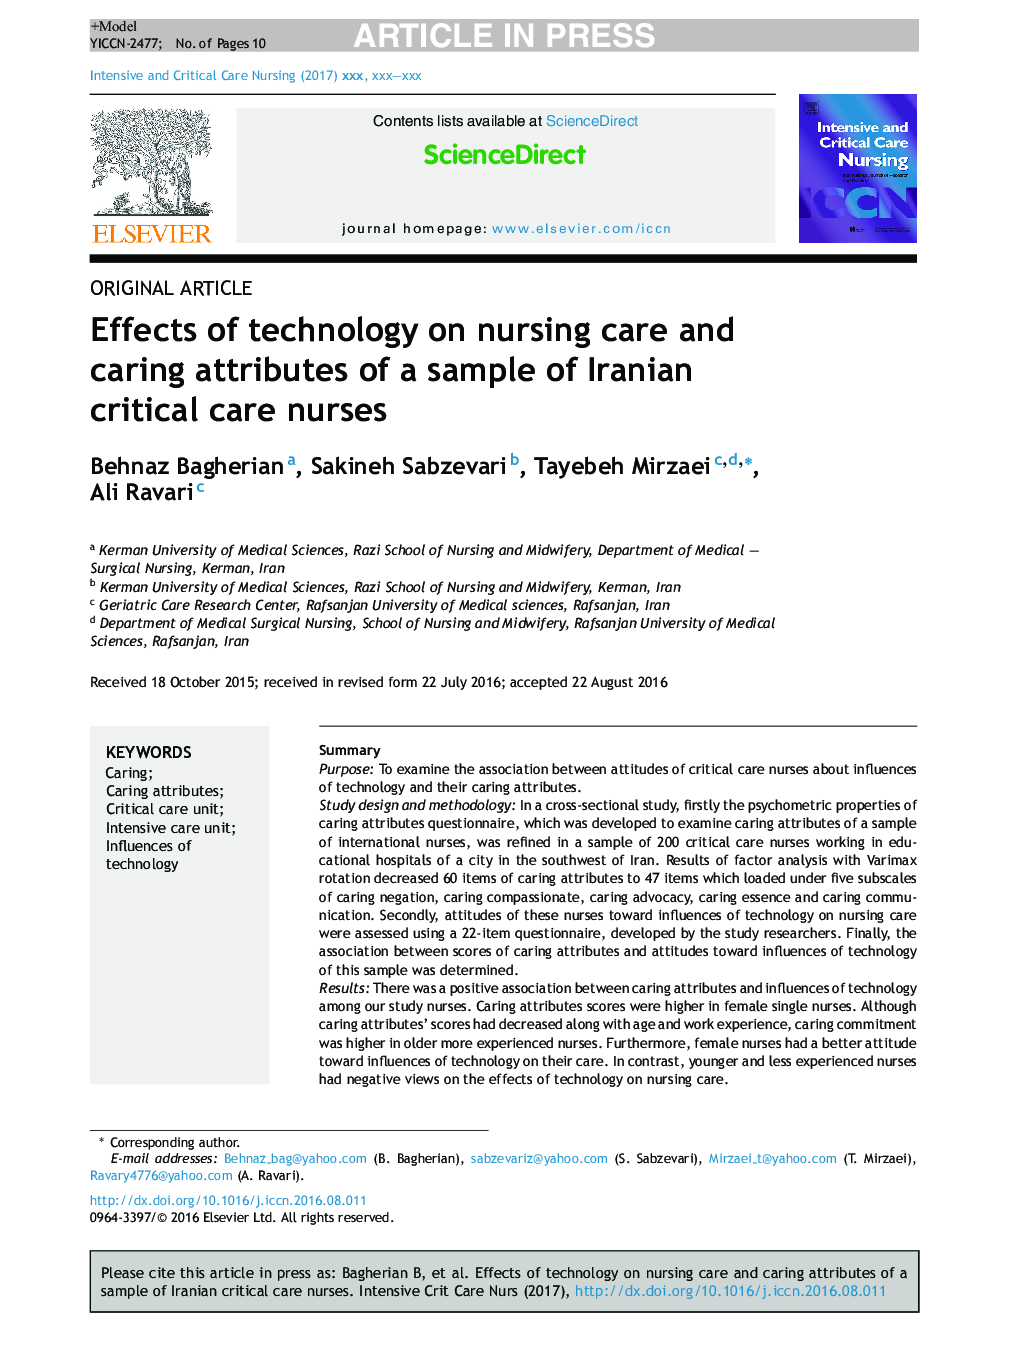 تأثیر تکنولوژی در مراقبت های پرستاری و ویژگی های مراقبت از نمونه های پرستار مراقبت های ویژه پرستاران ایرانی 